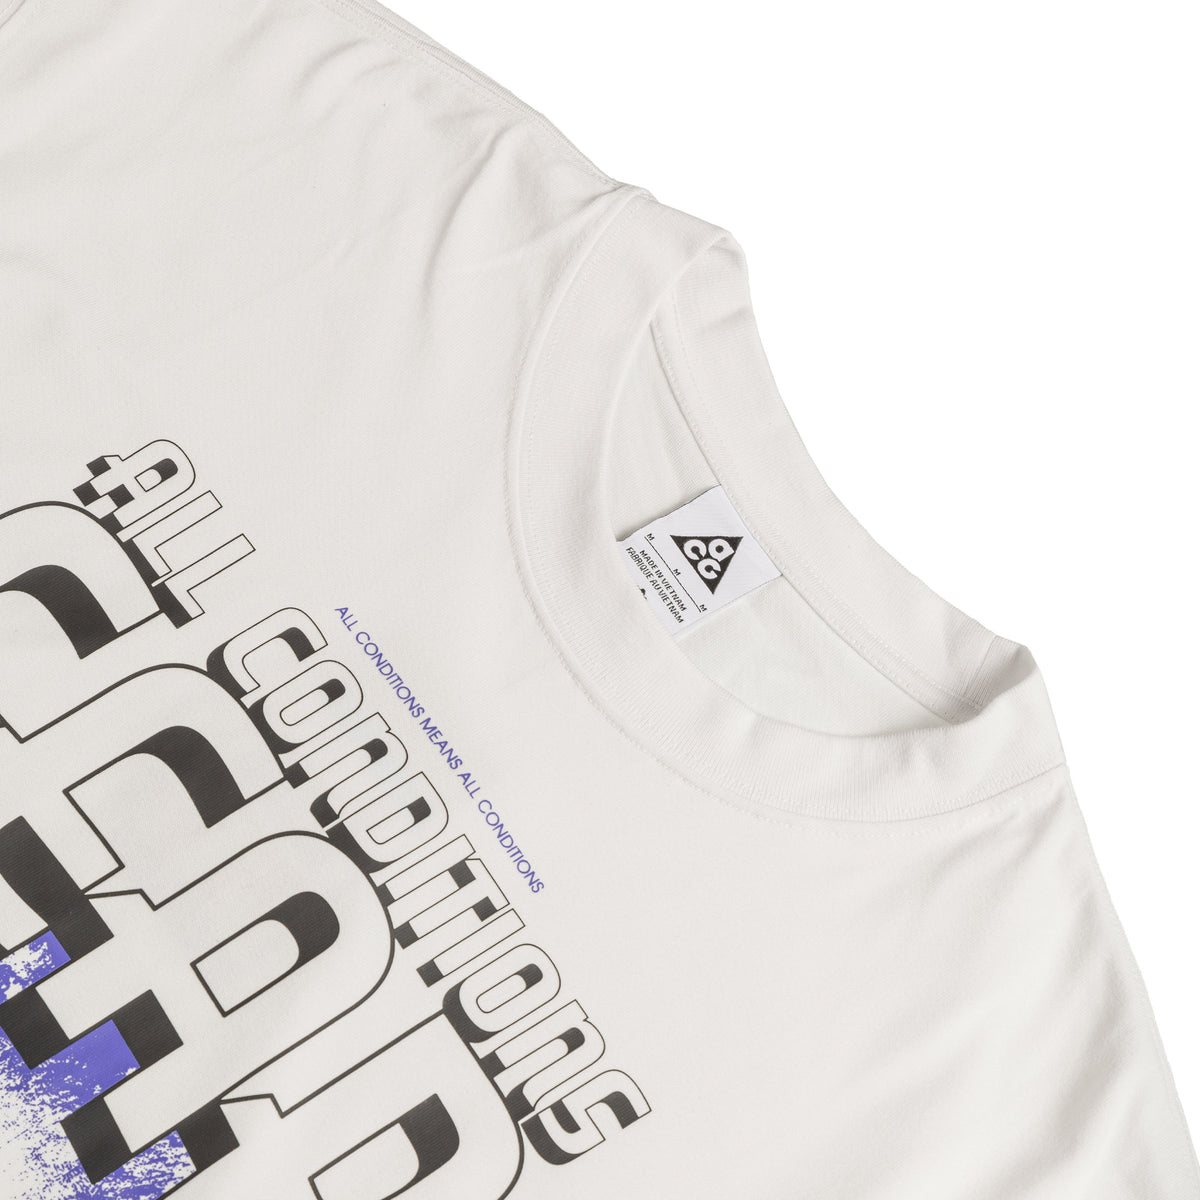 Nike ACG Long-Sleeve T-Shirt (Summit White)